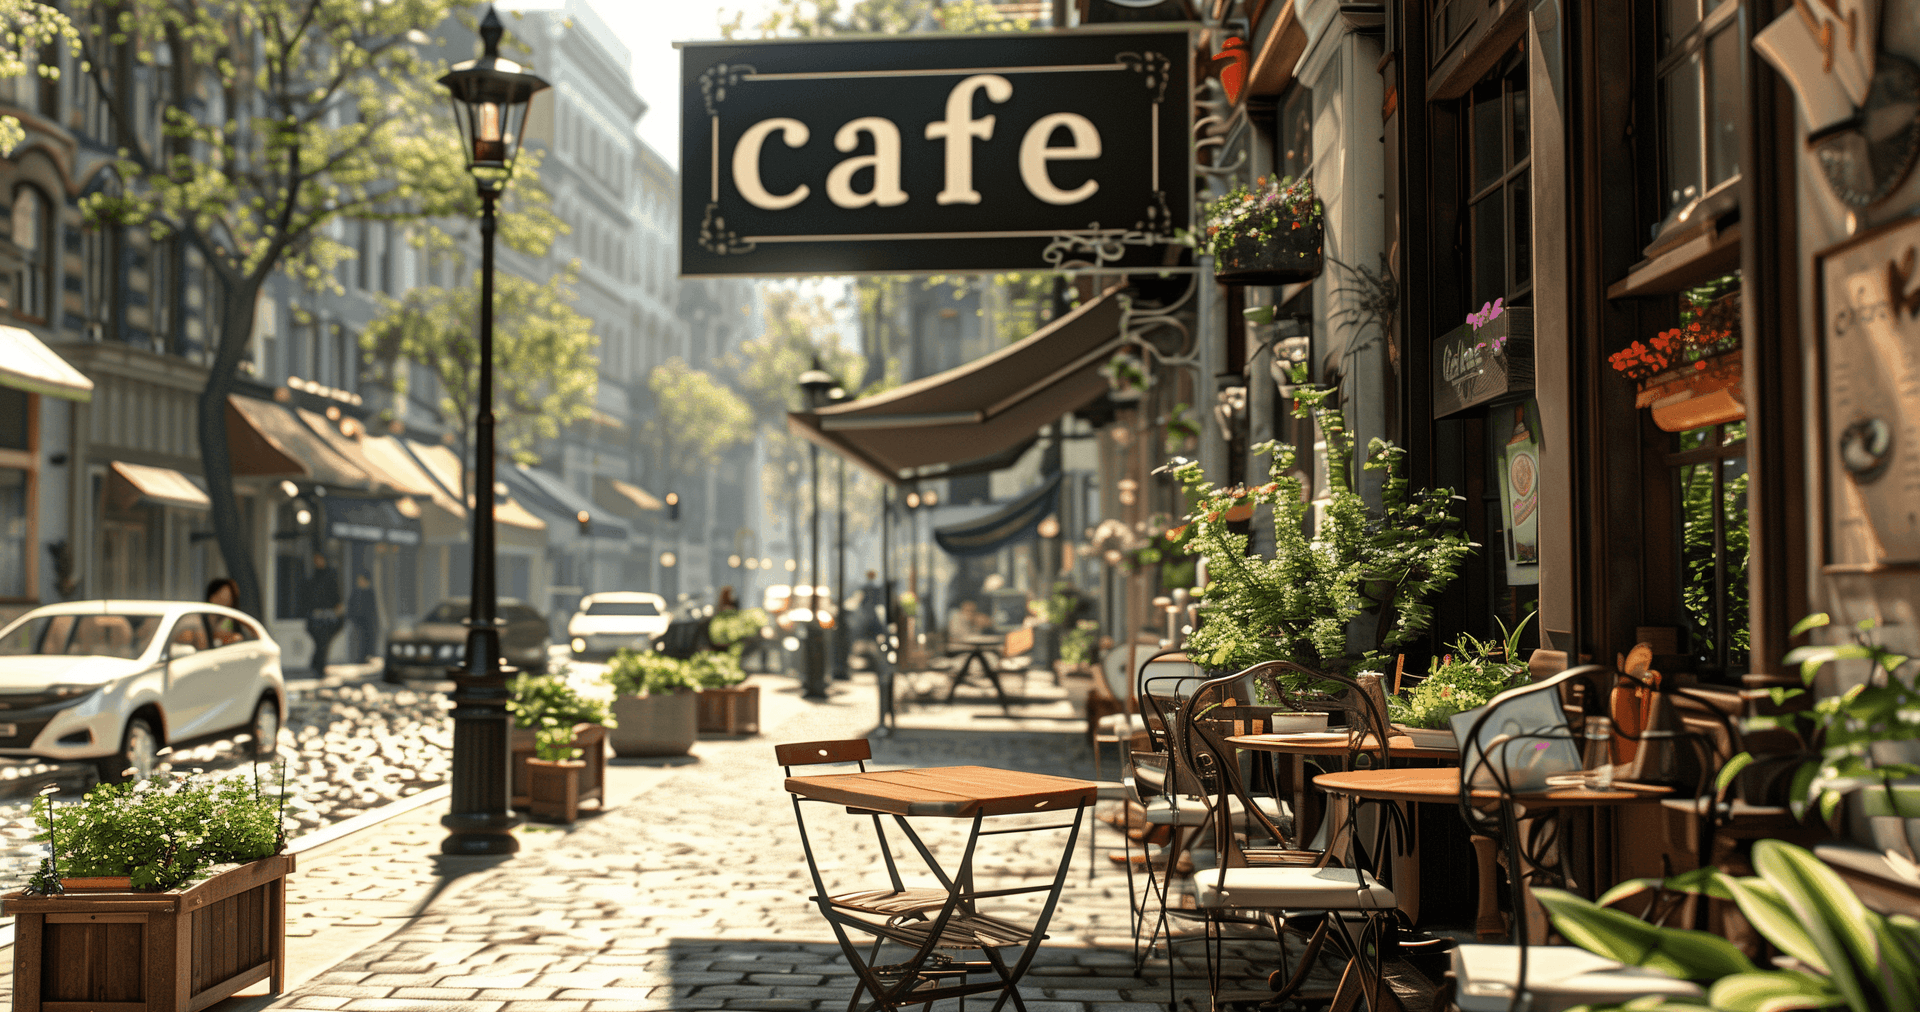 Ein hübsches Cafe mit Terrasse.